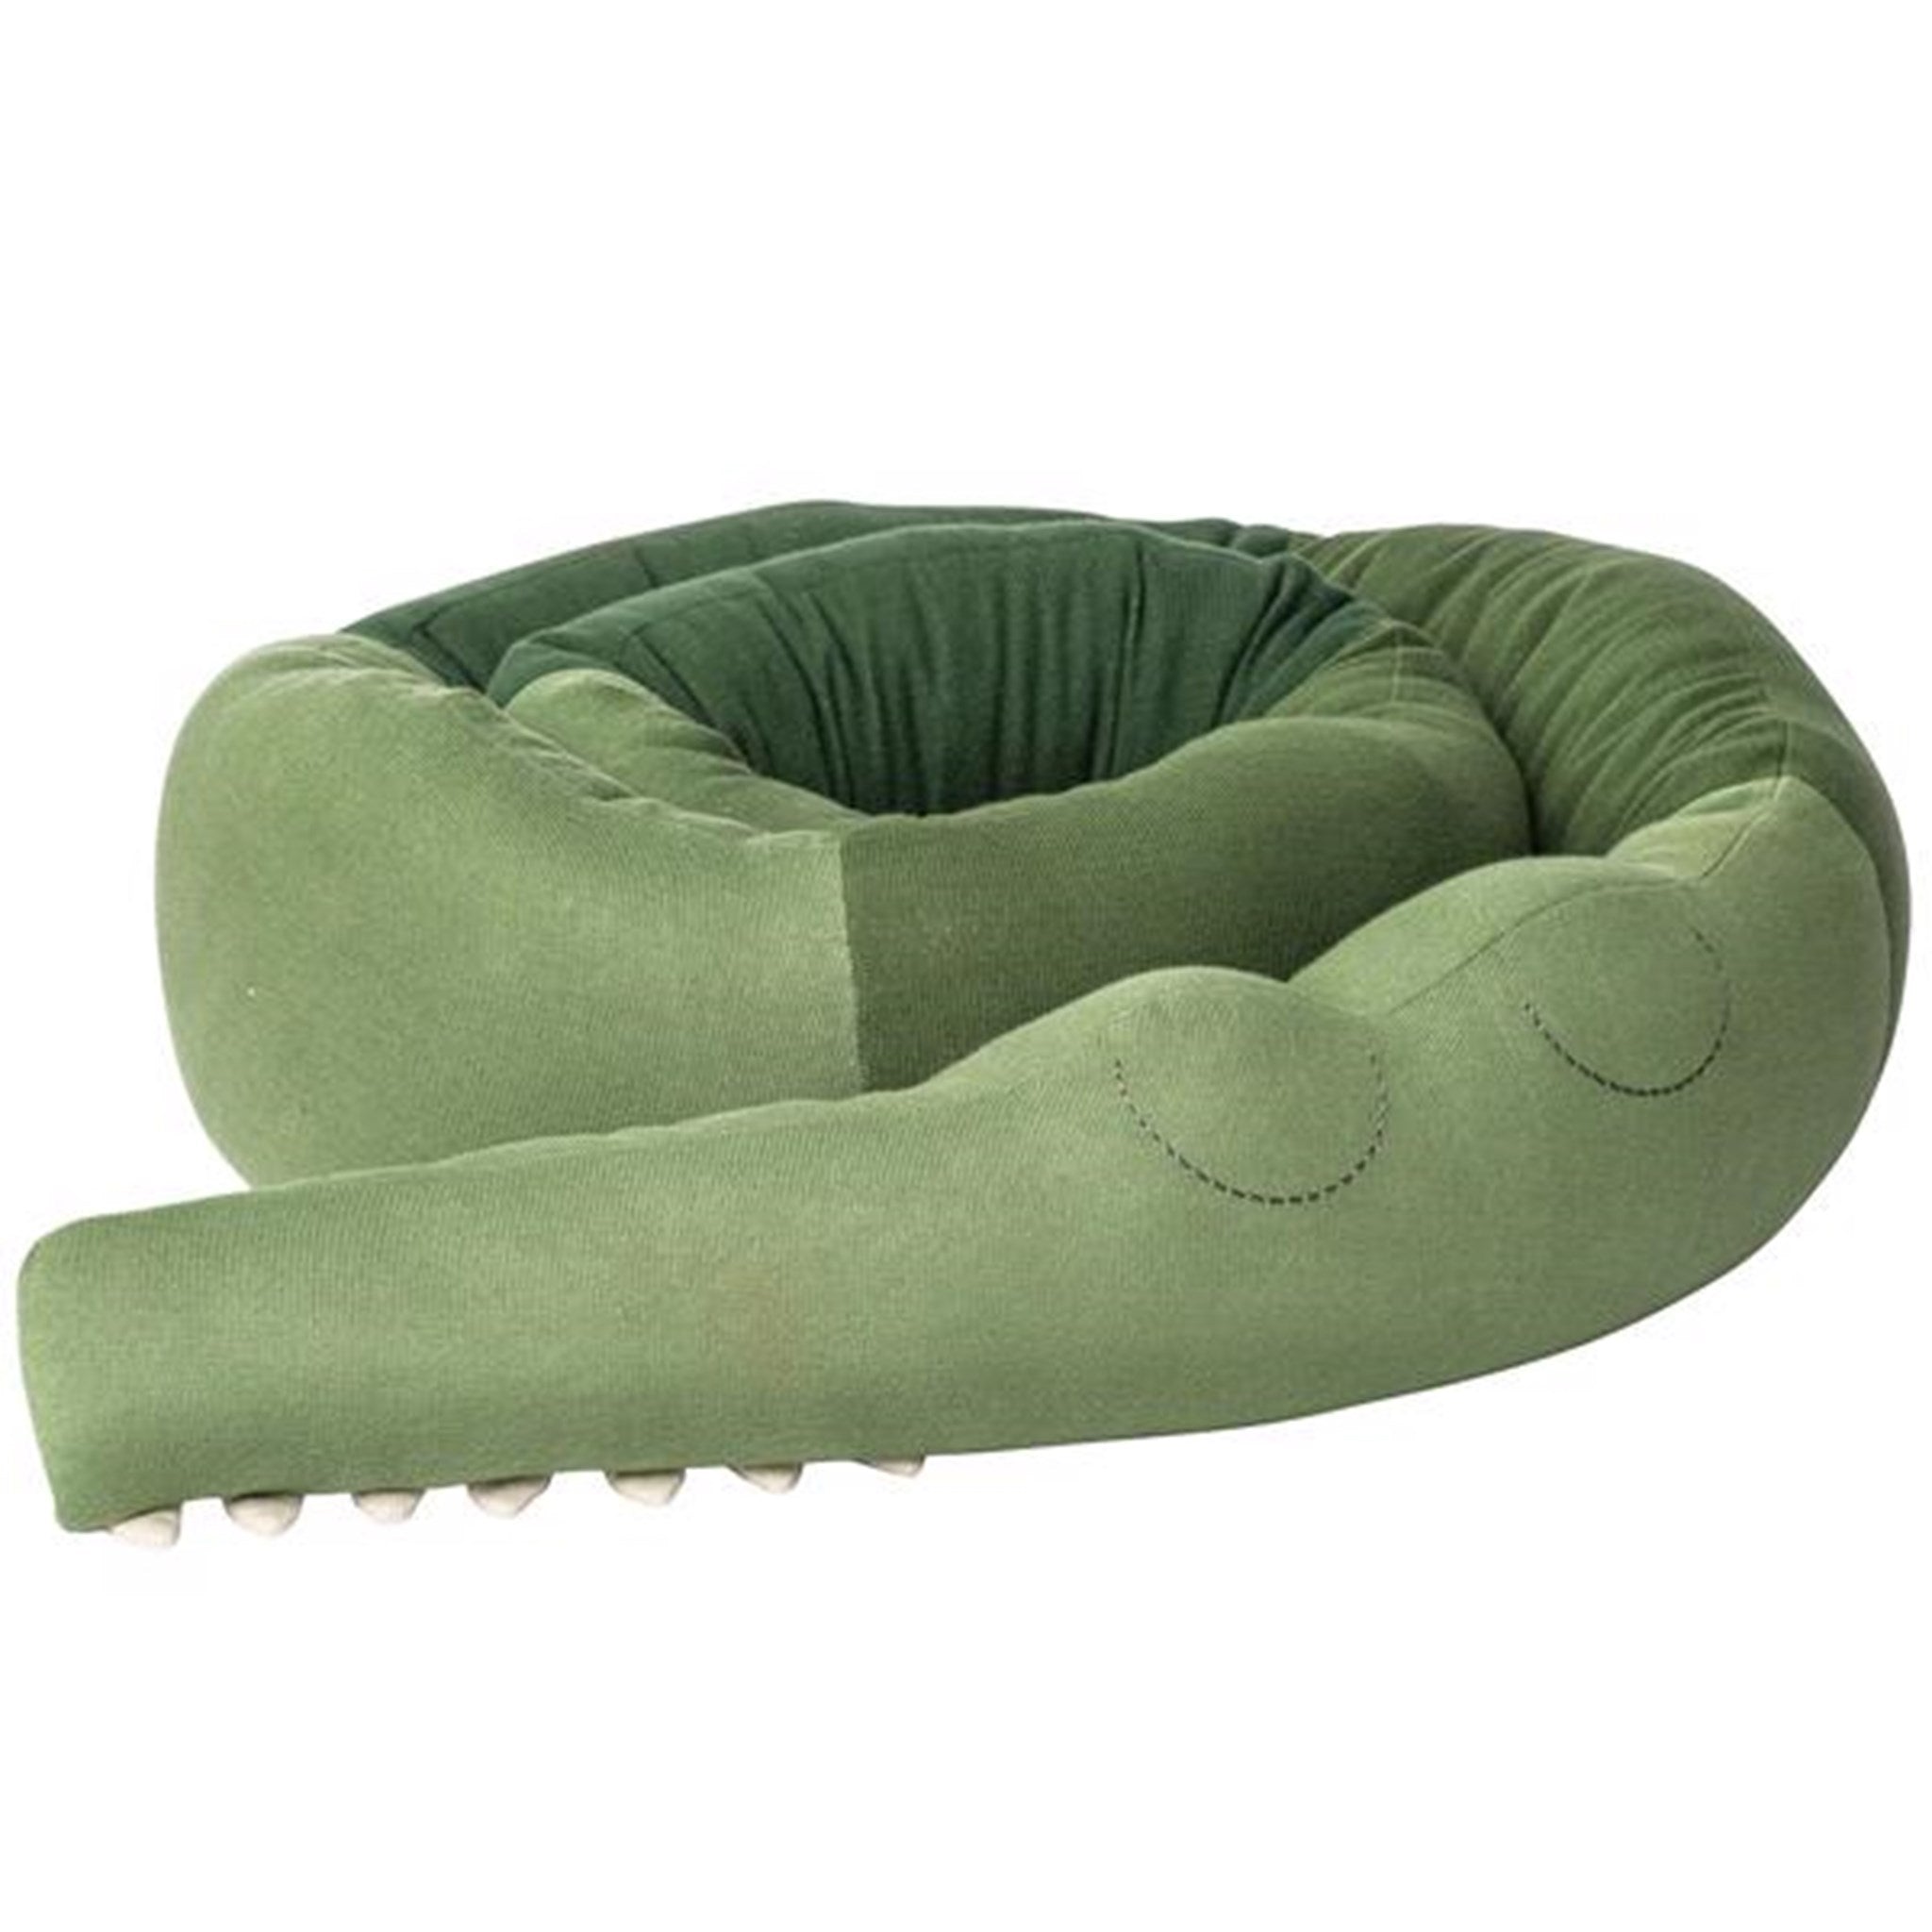 Sebra Pillow Knitted Sleeping Croc Green XXL